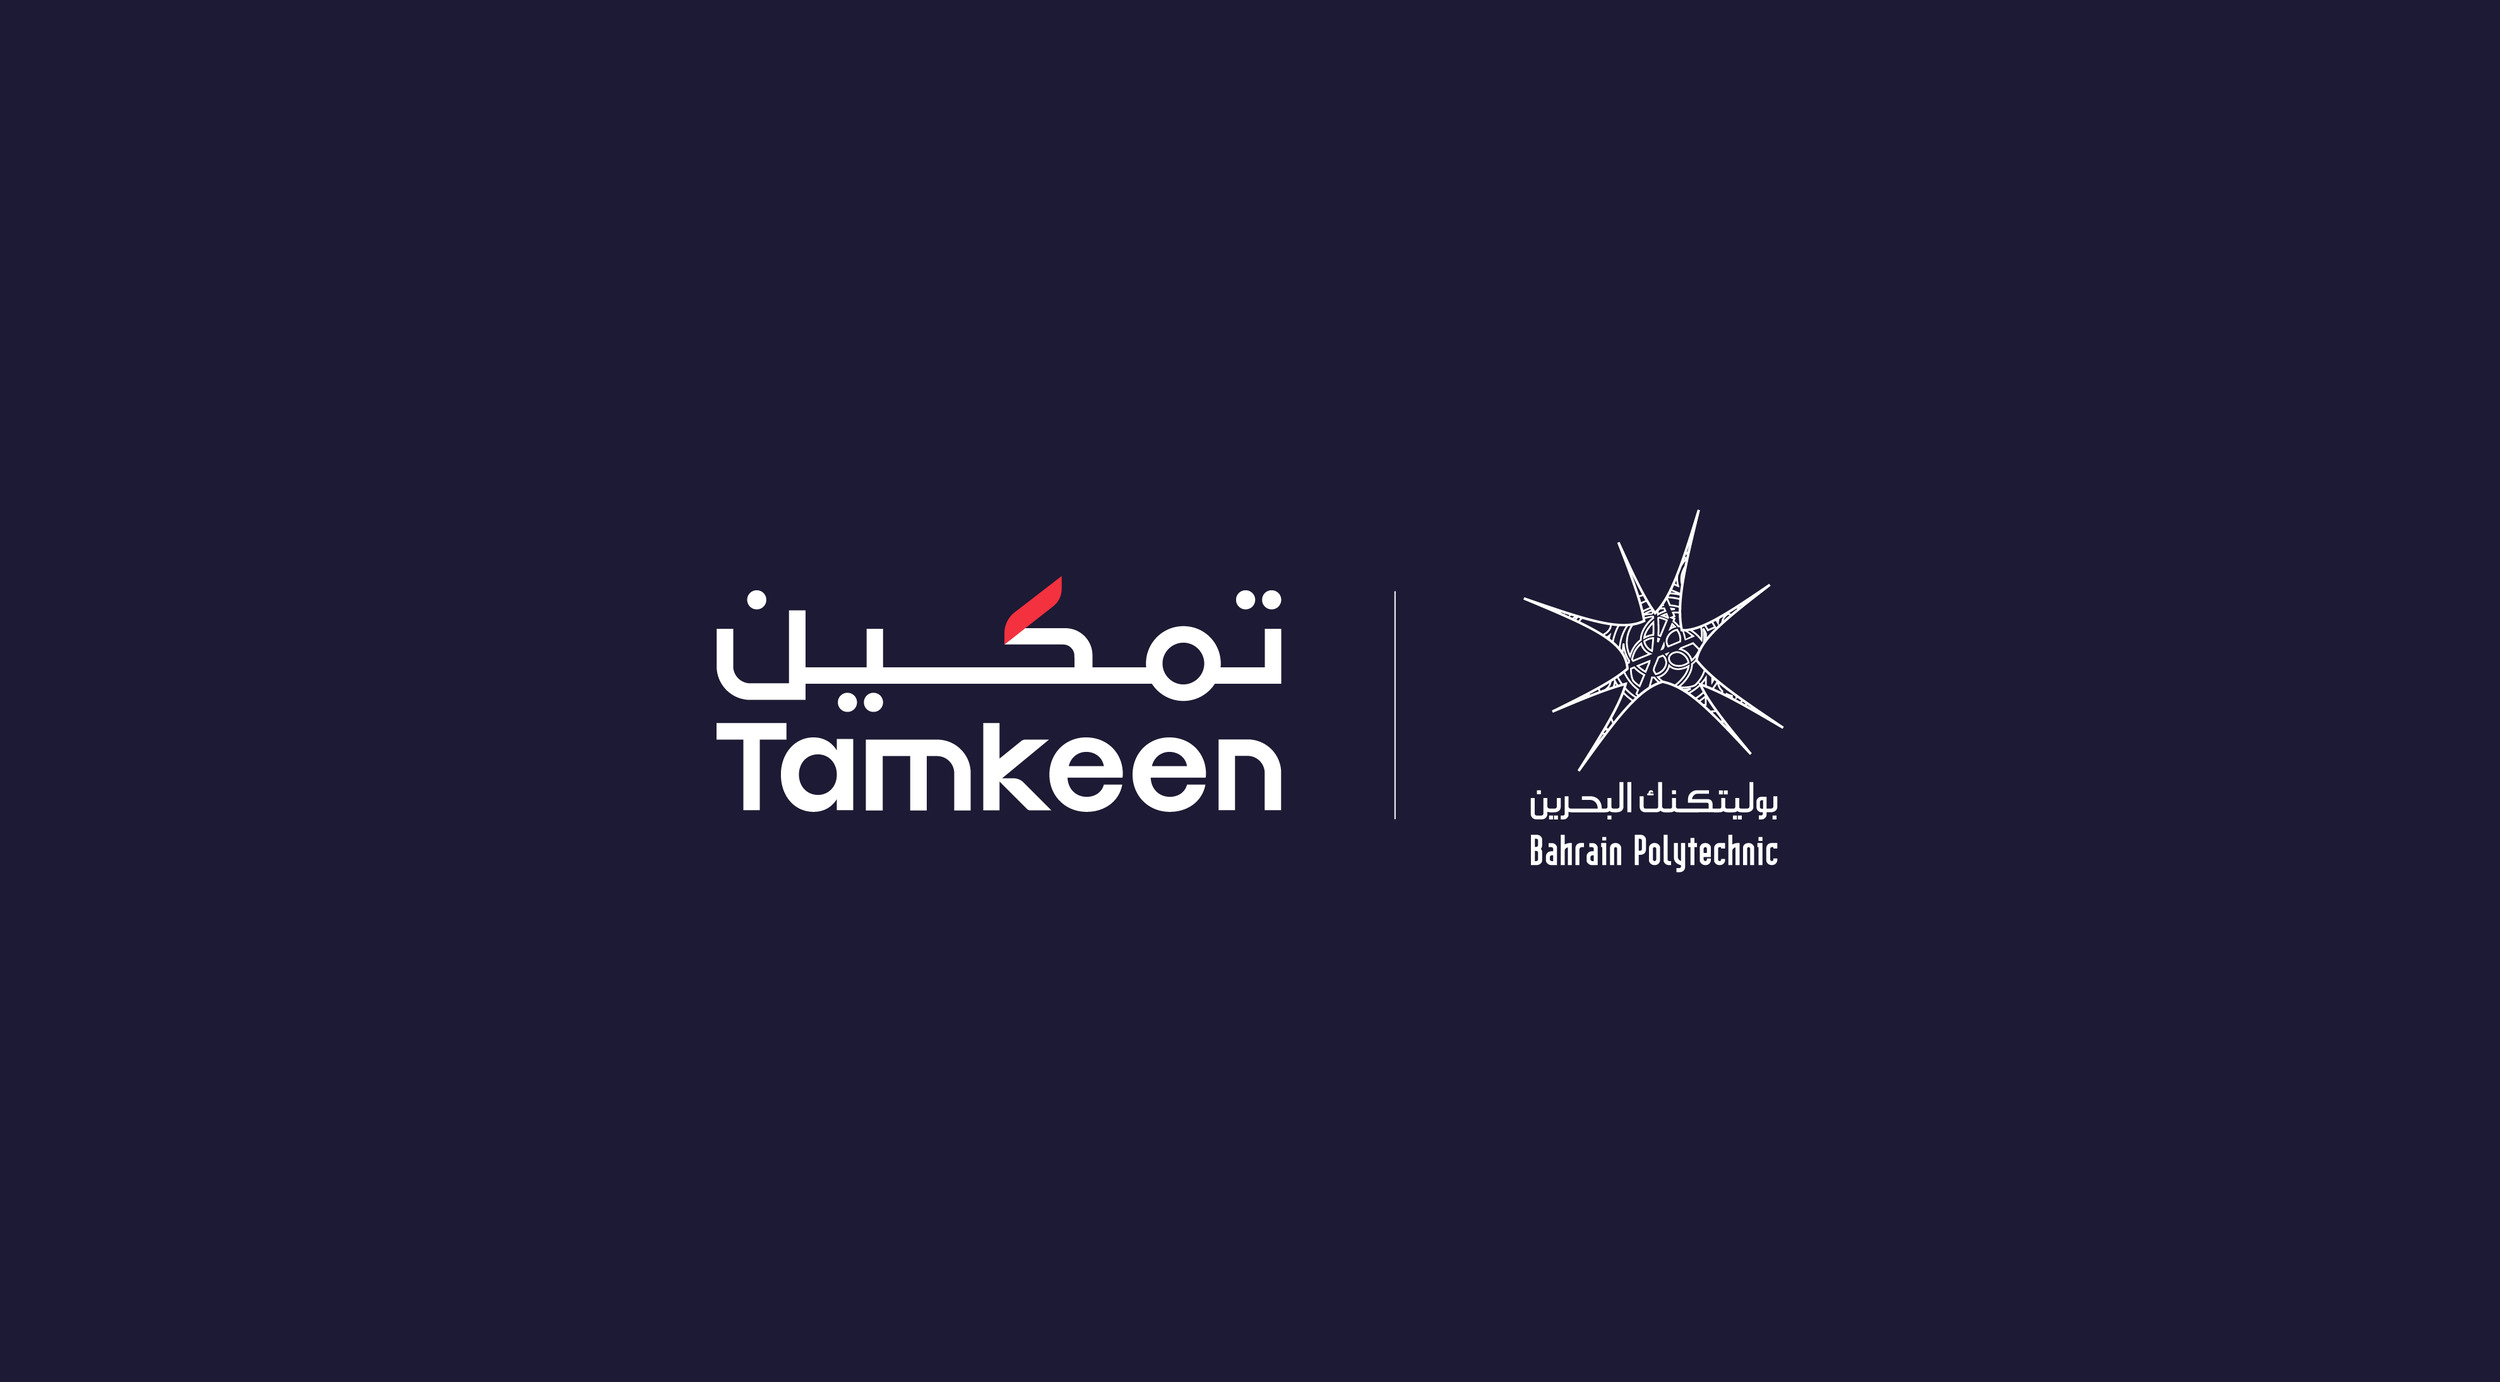 تمكين تطلق المرحلة الثانية من برنامج مركز الابتكار السحابي بالتعاون مع بوليتكنك البحرين